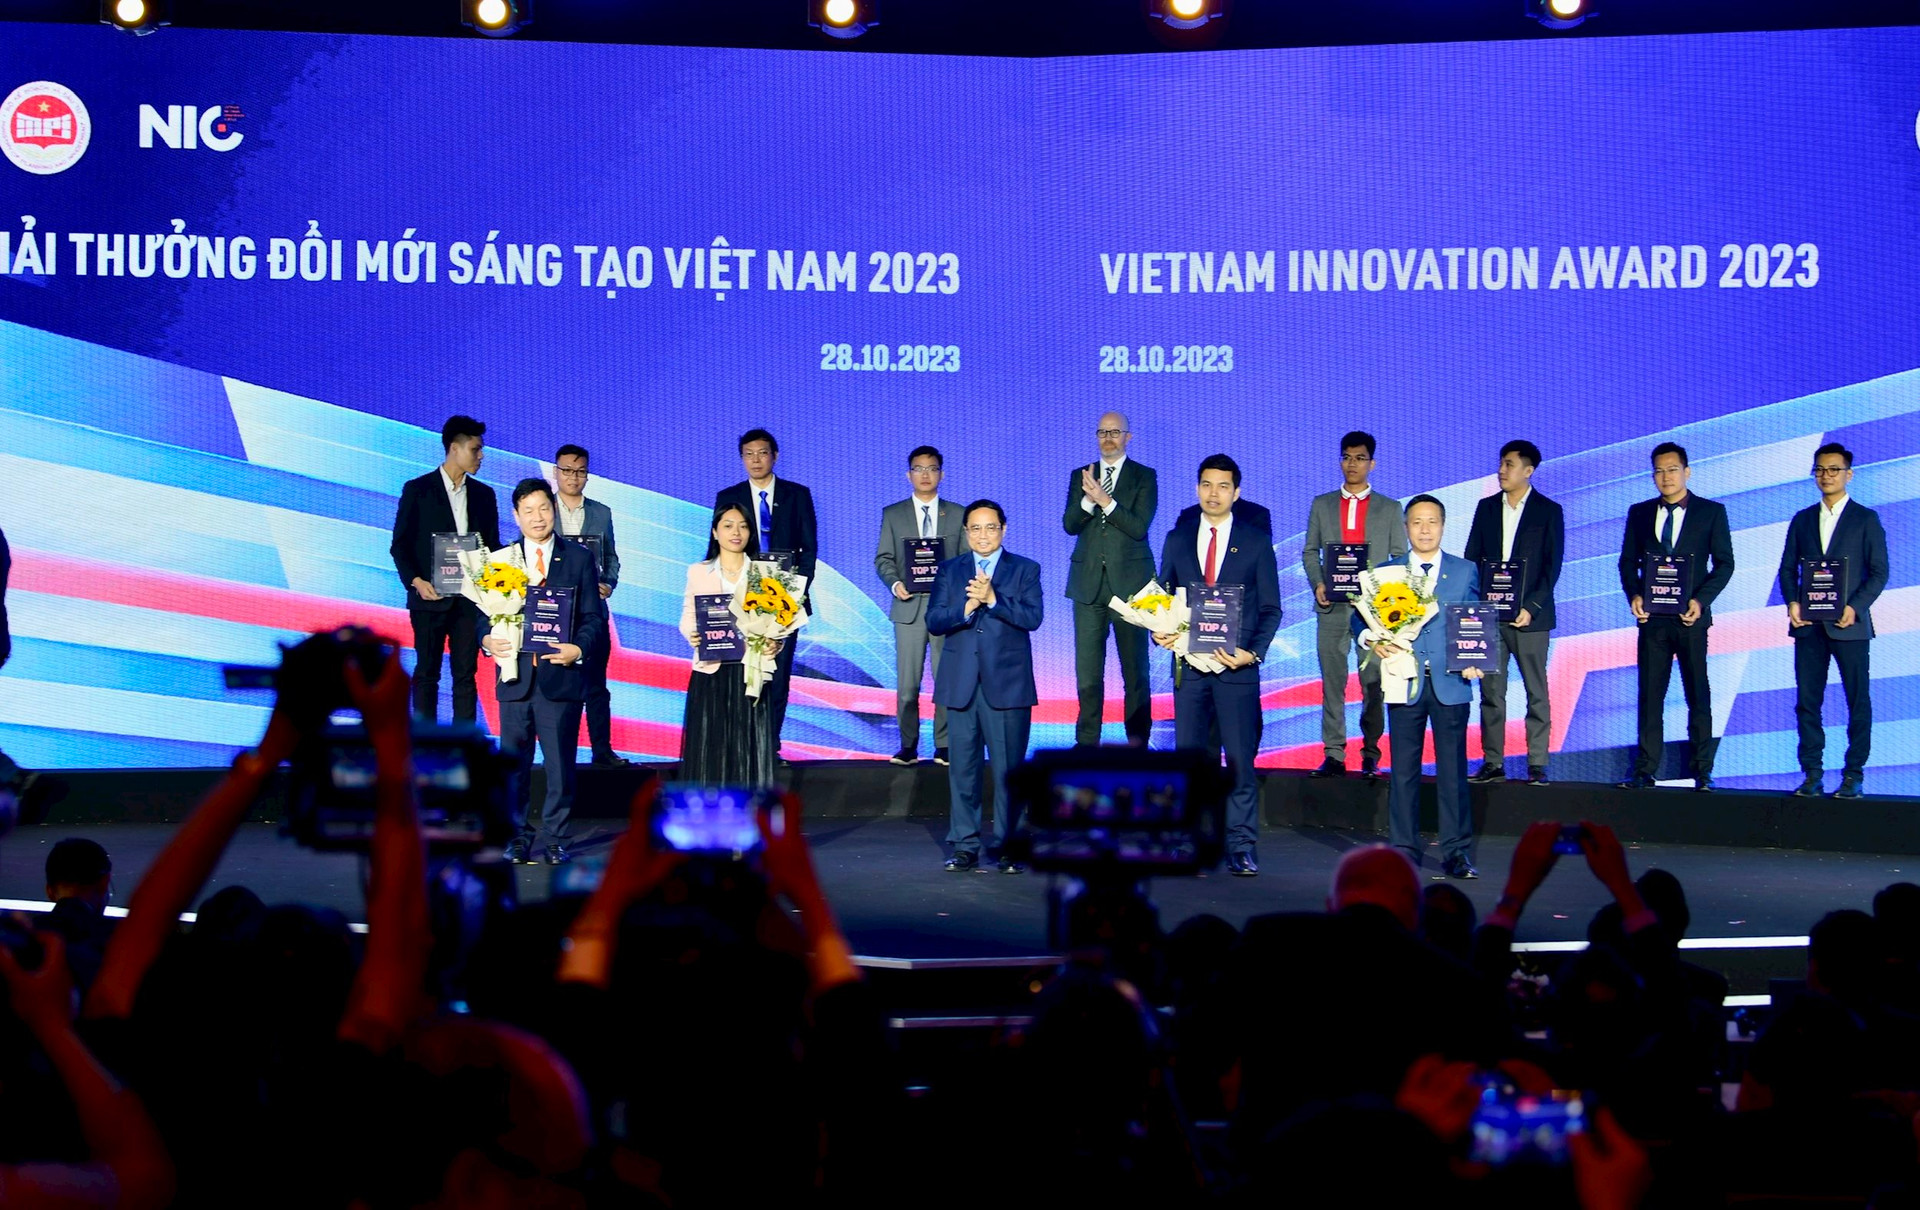 Viettel, Samsung, SpaceX hội tụ tại Triển lãm Quốc tế Đổi mới sáng tạo Việt Nam 2023: Trình diễn hàng loạt công nghệ mới, công bố chip 5G - Ảnh 3.